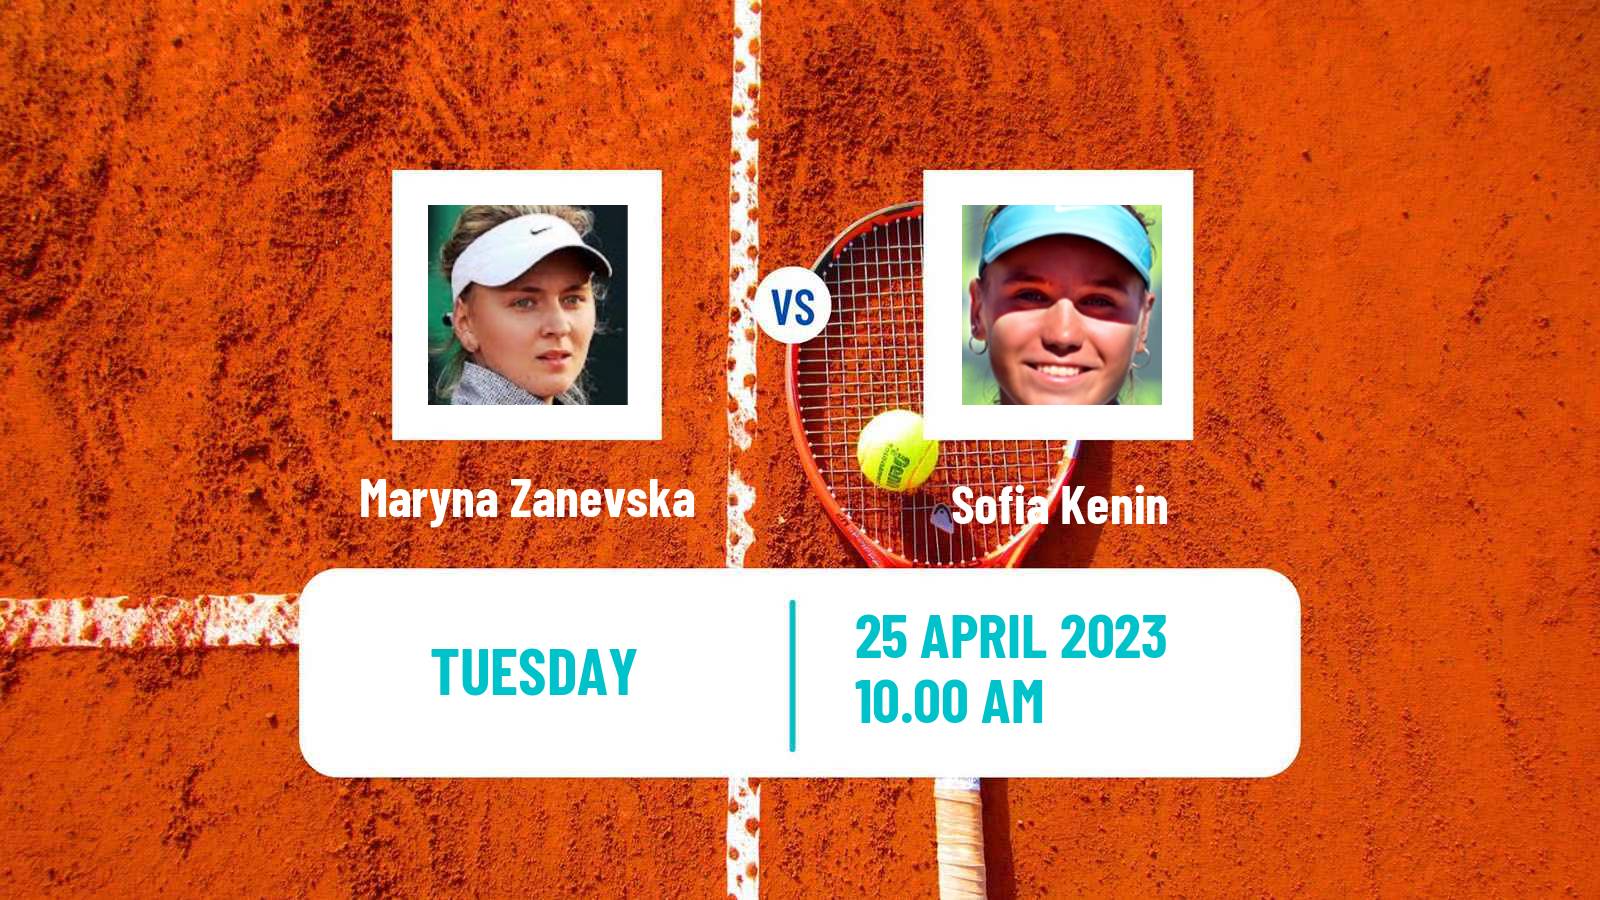 Tennis WTA Madrid Maryna Zanevska - Sofia Kenin